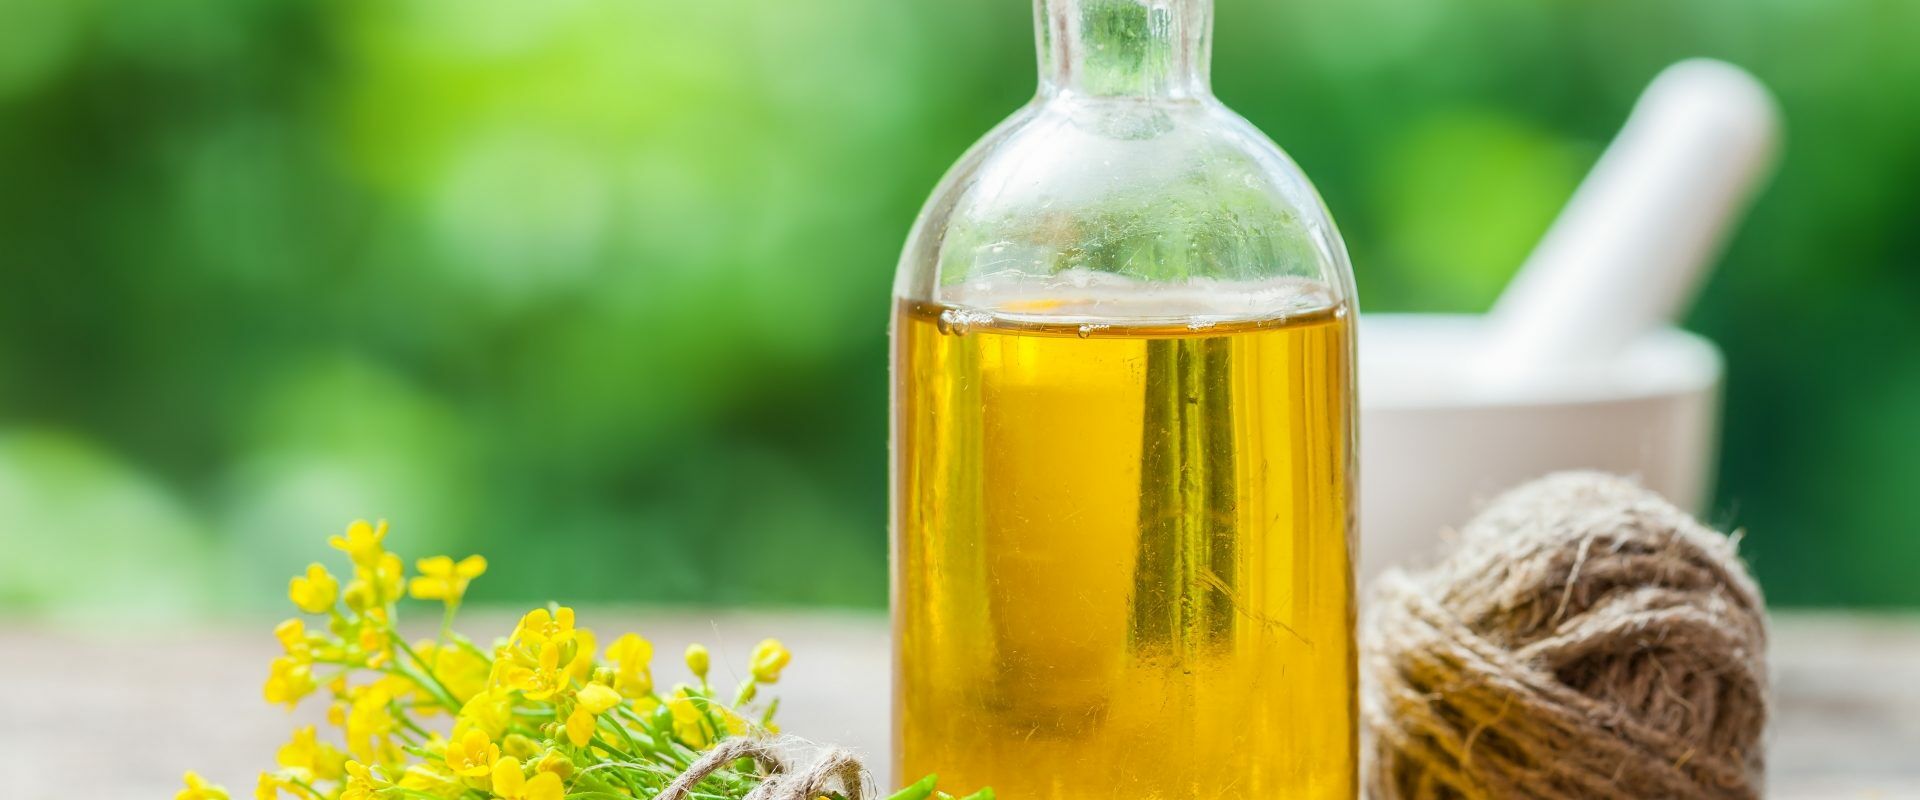 Olej rzepakowy - zdrowy czy szkodliwy? Olej rzepakowy w butelce, bukiet rzepaku i biały moździerz na drewnianym stole.